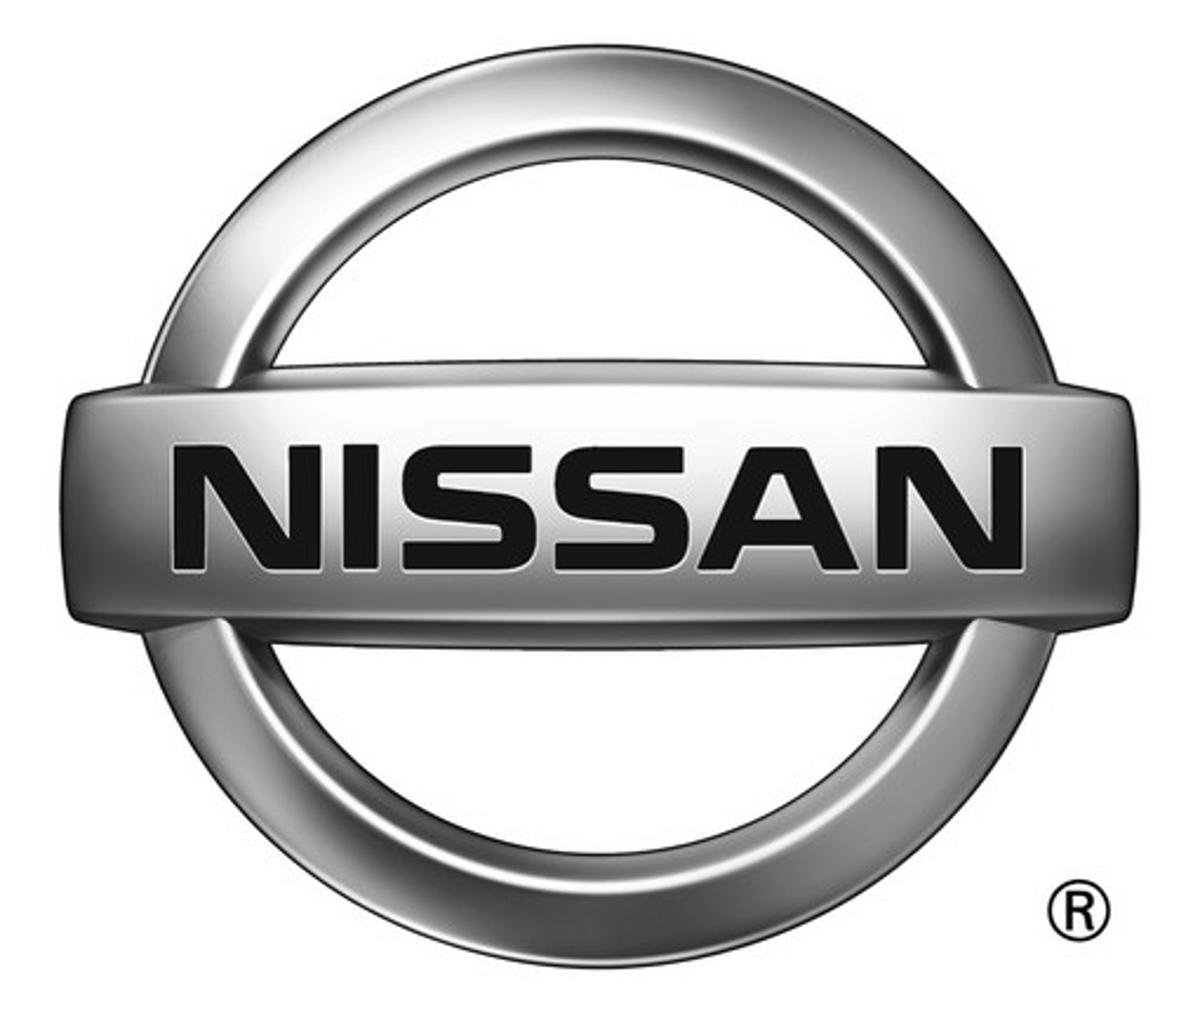 Nissan revelou falsificações nos resultados dos testes de emissões enviados para o governo japonês. Dezenove modelos da marca estão envolvidos no escândalo.